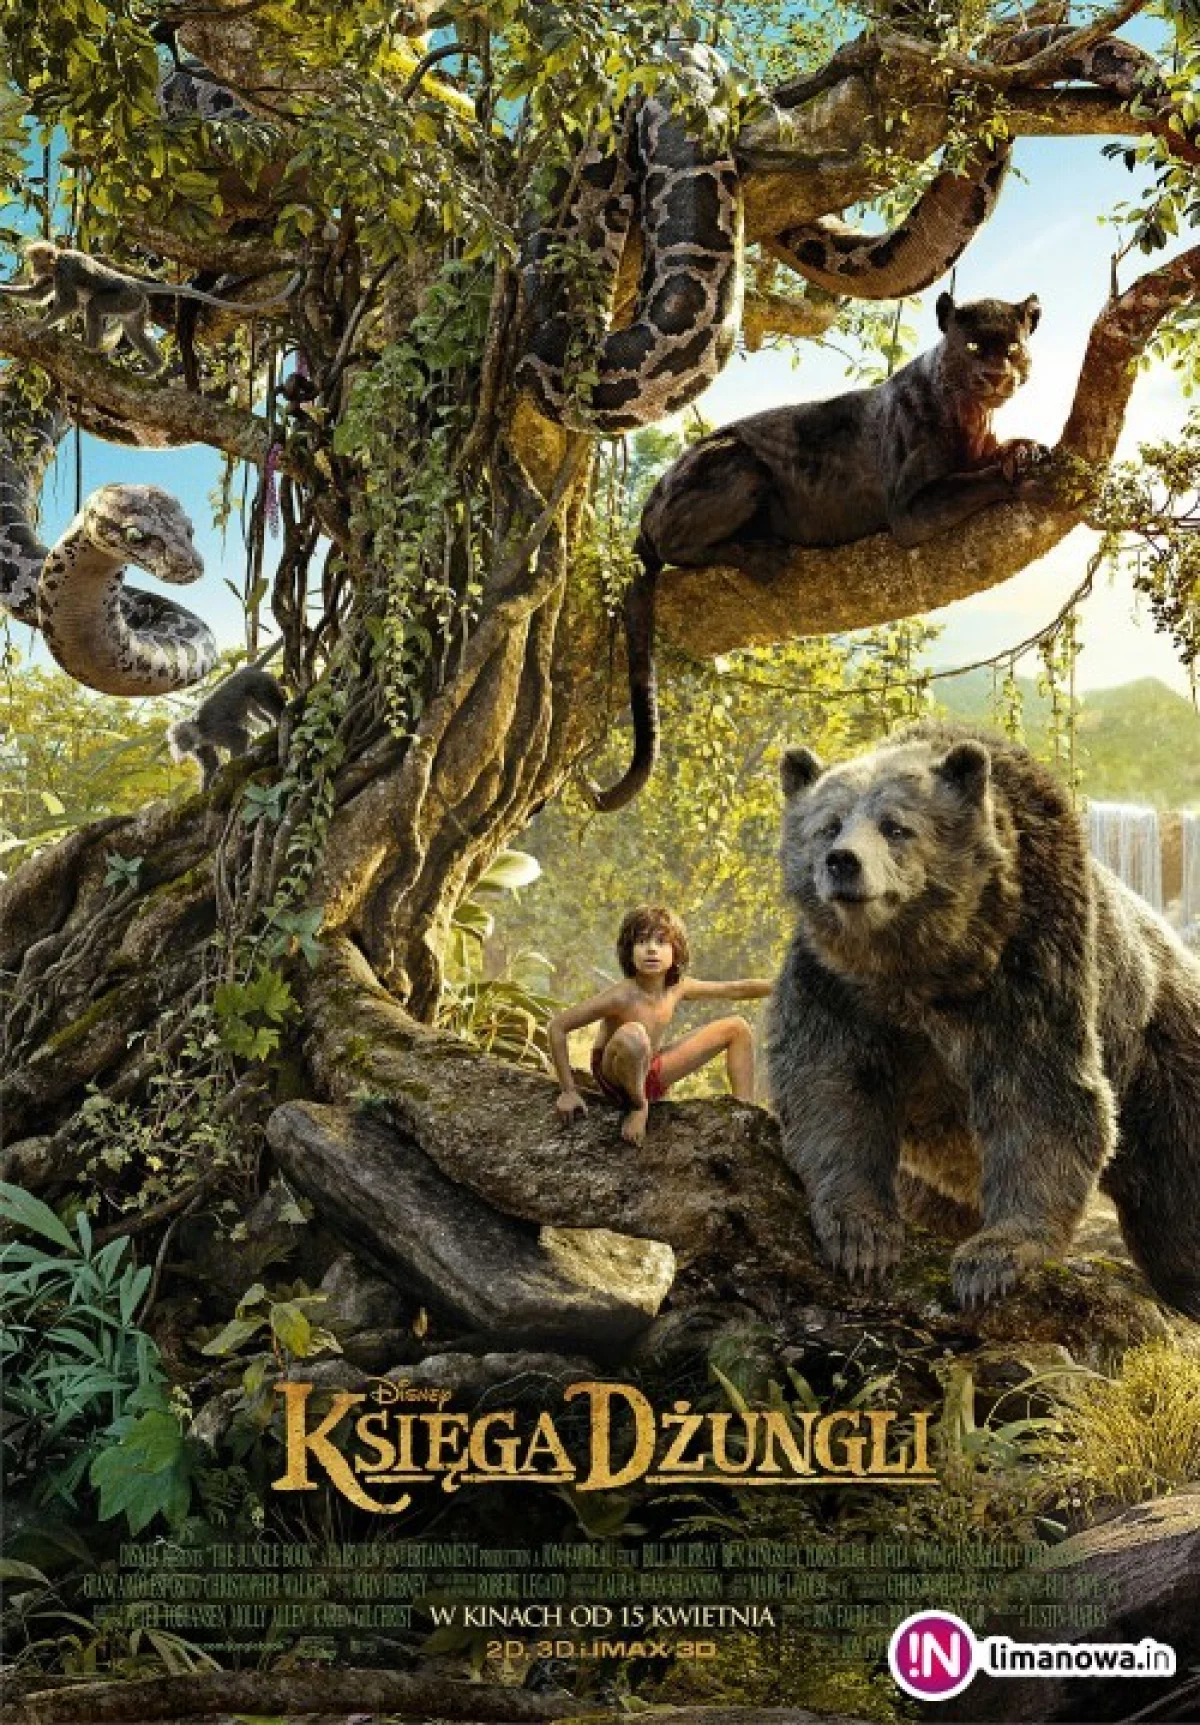 Premiera w kinie Klaps - „Księga dżungli” na ekranie od 15 kwietnia!